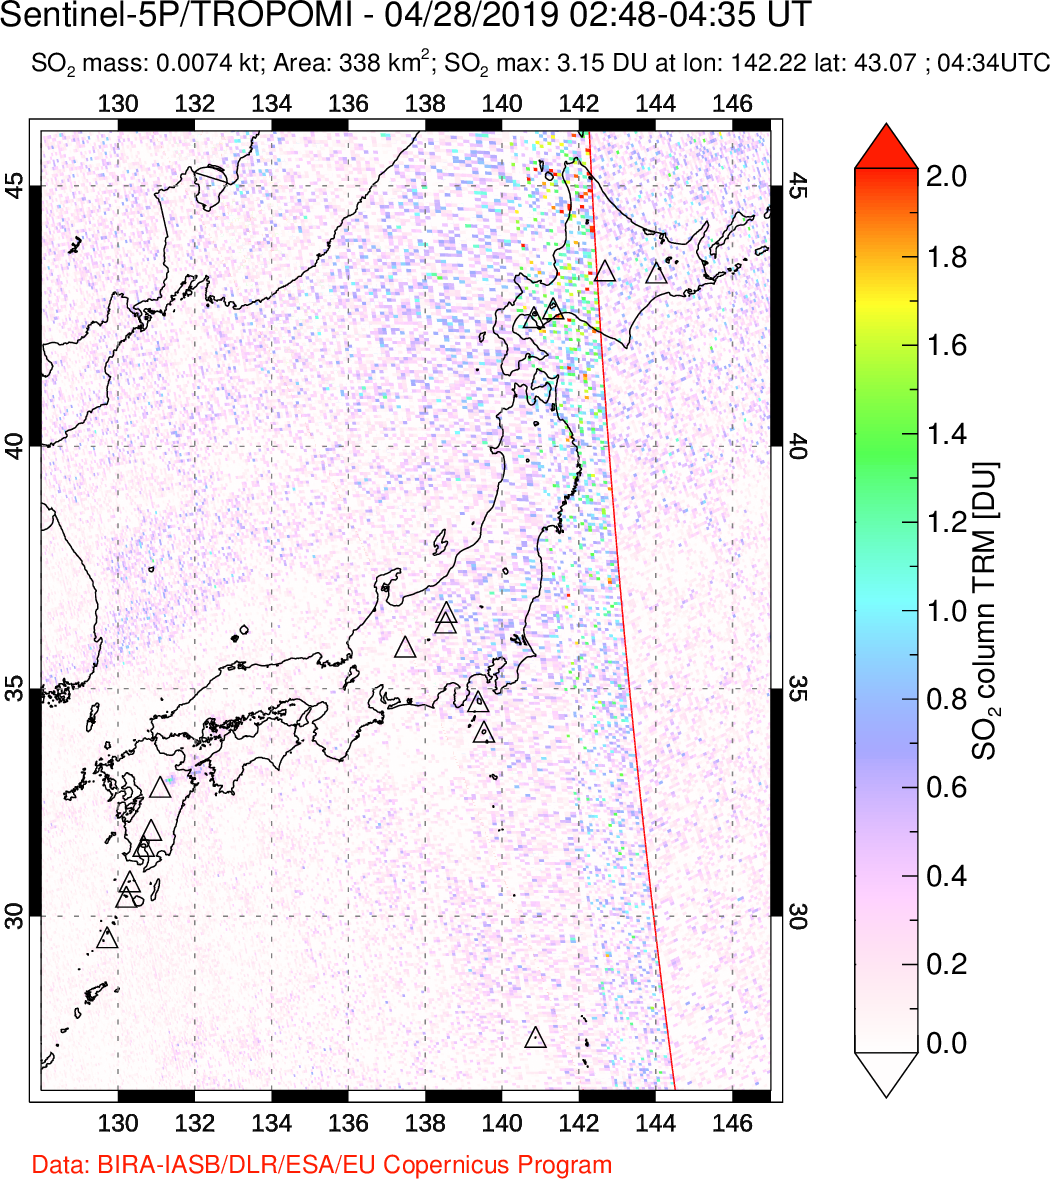 A sulfur dioxide image over Japan on Apr 28, 2019.